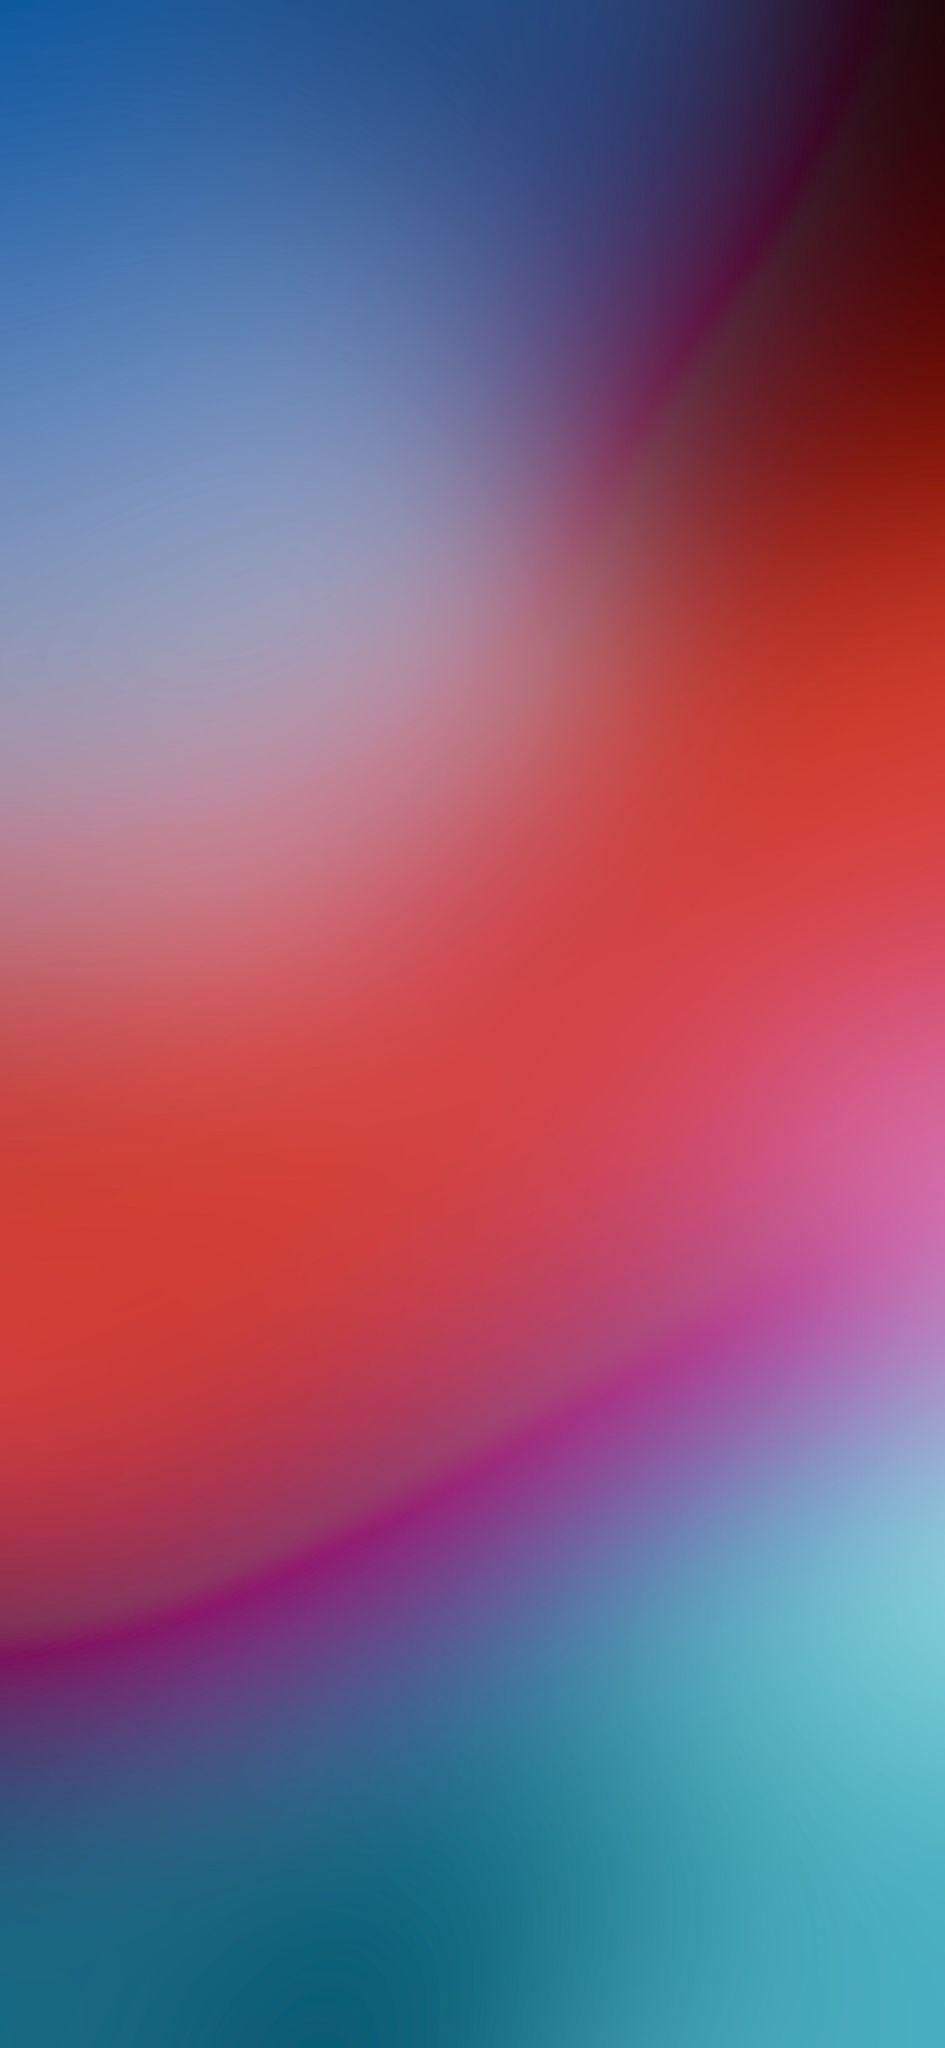 500 Blurred Ảnh Hình Nền Background Đẹp Nhất Miễn Phí Dành Cho Bạn Tải  Về Blurred Tại Zicxa Photos